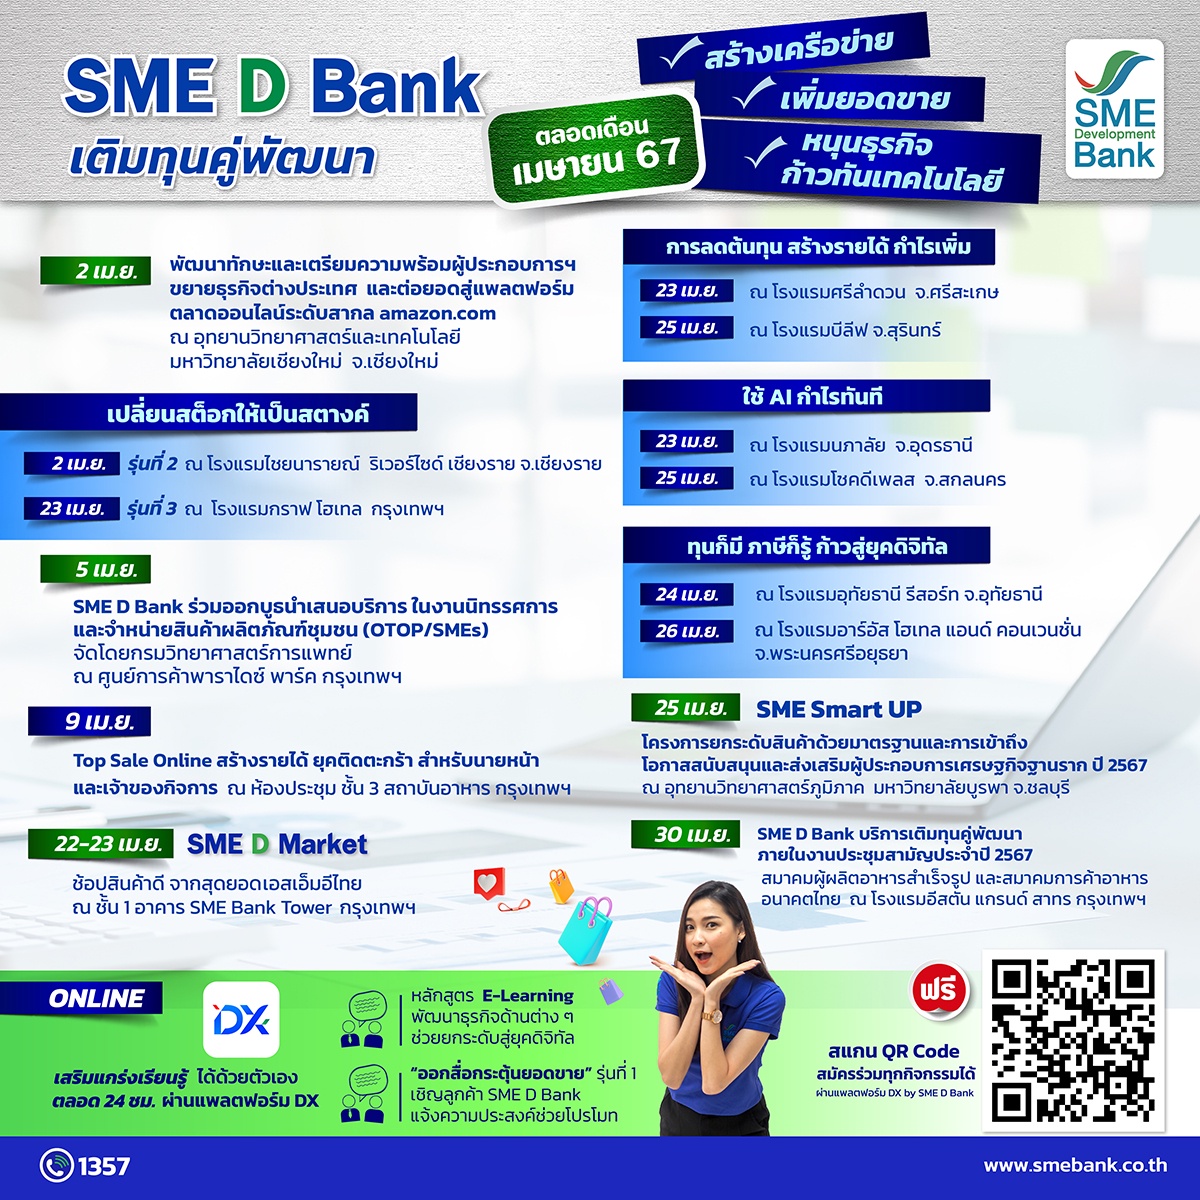 SME D Bank จัดขบวน 'เติมทุนคู่พัฒนา'เสริมแกร่งเอสเอ็มอีตลอดเดือน เม.ย. สร้างโอกาสธุรกิจ ขยายตลาด เพิ่มความสามารถการแข่งขัน